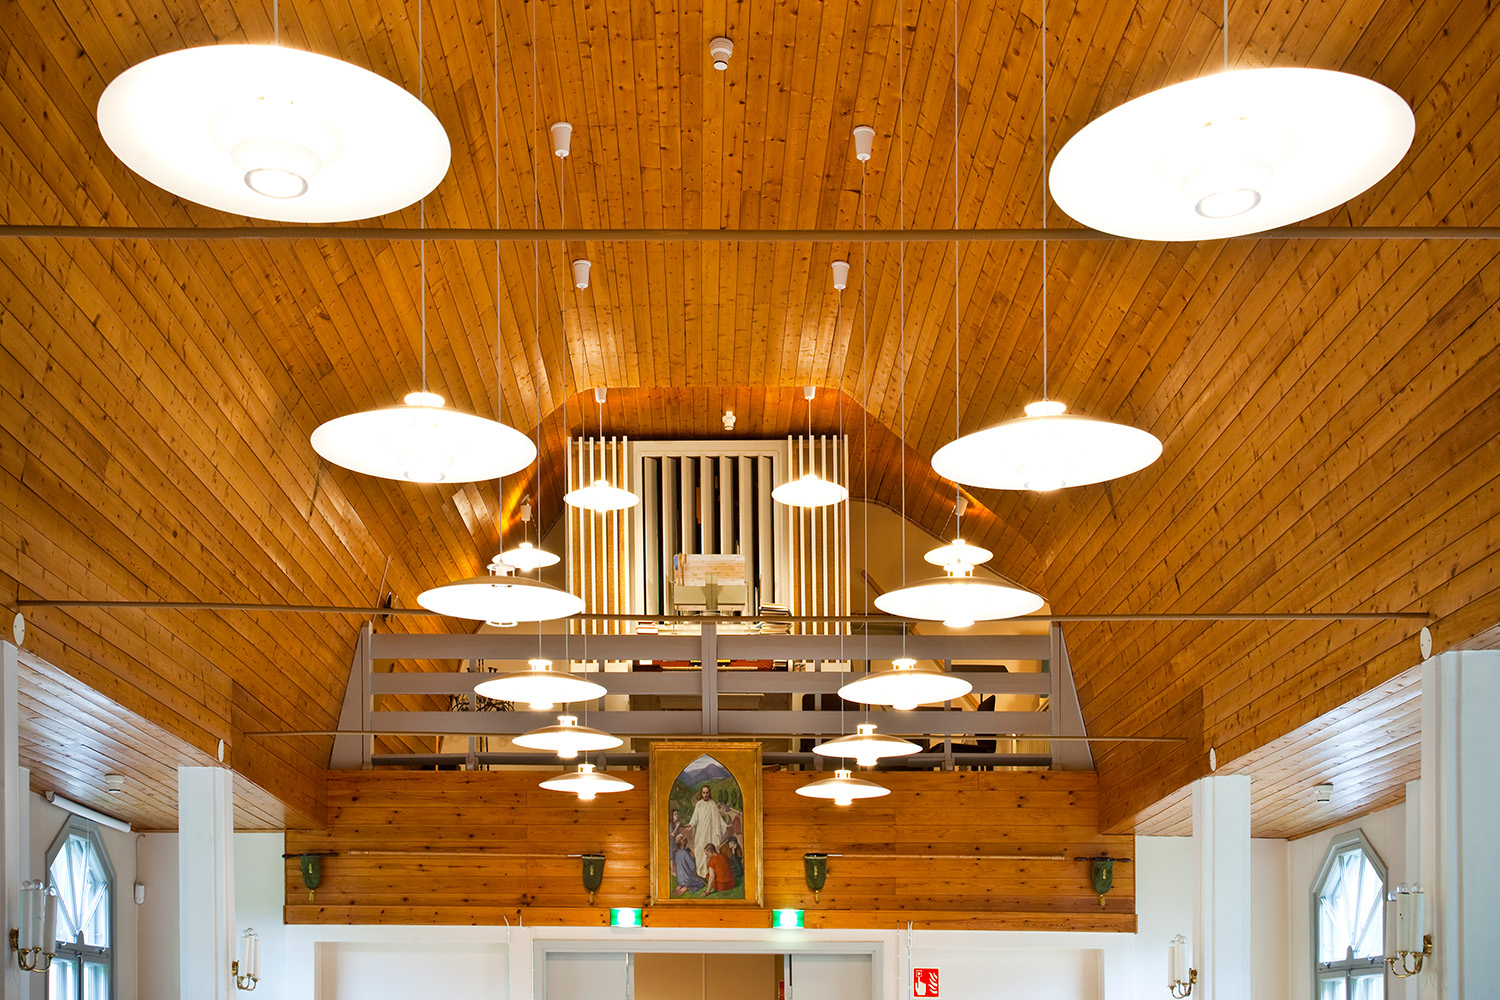 perkkaan kappelin kaareutuva puinen lämminsävyinen sisäkatto, josta riippuu valaisimia, taustalla näkyvät urut ja lehteri sekä maalaus "Hyvä paimen"